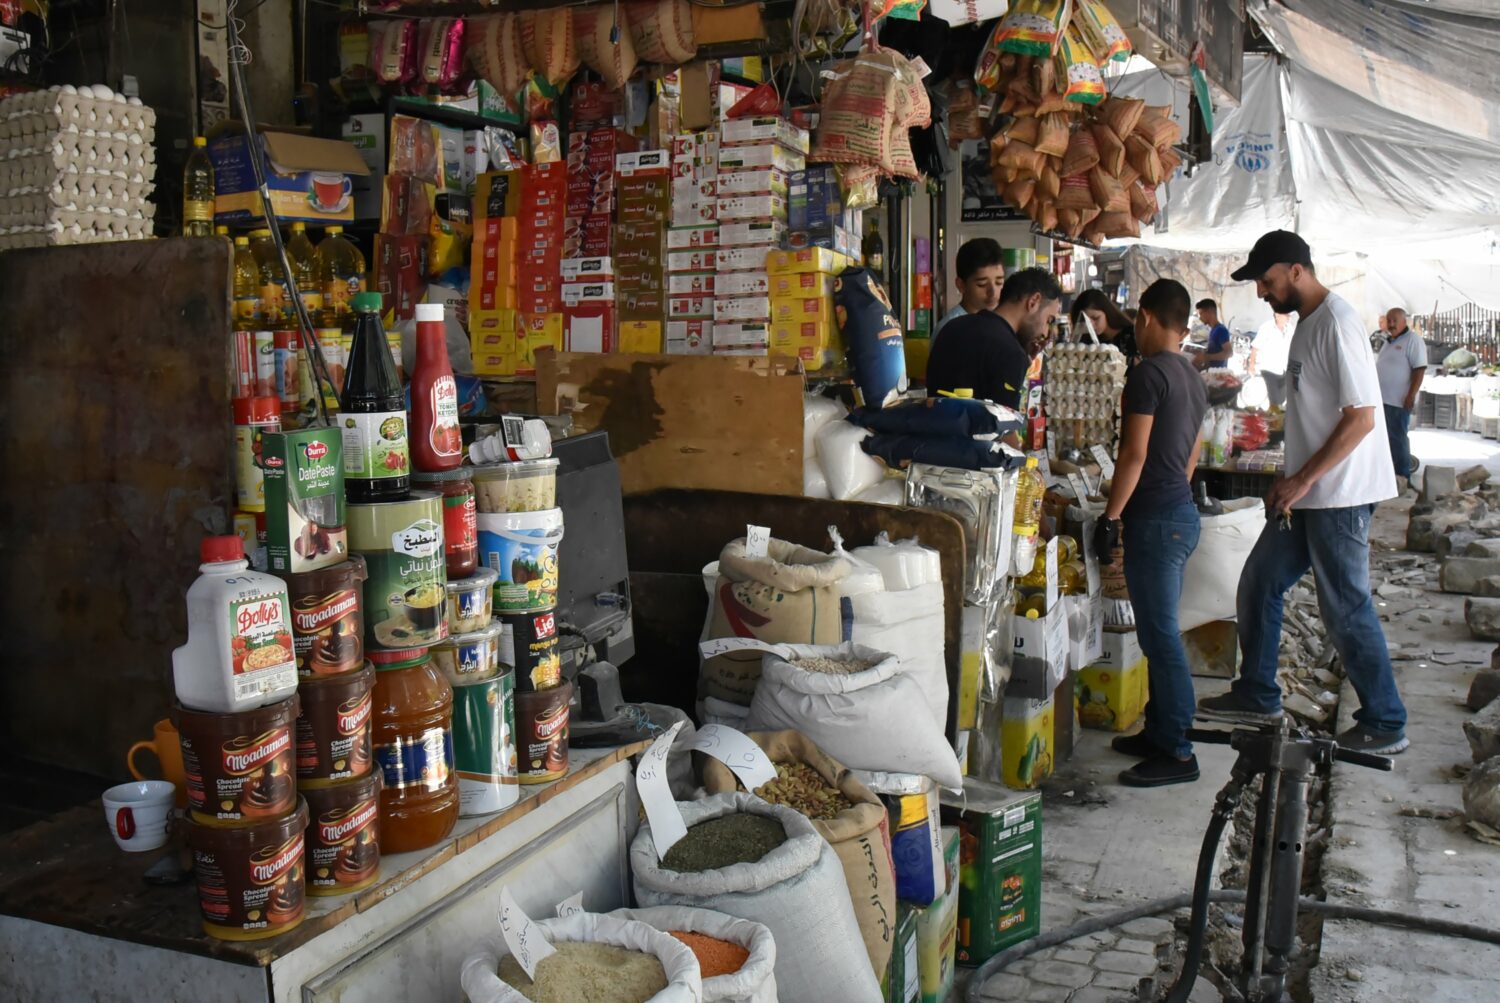 سوريون يتسوقون في سوق بدمشق بعد ساعات من إصدار مرسوما تشريعيا يقضي بزيادة رواتب العسكريين بنسبة 50 بالمئة - إنترنت